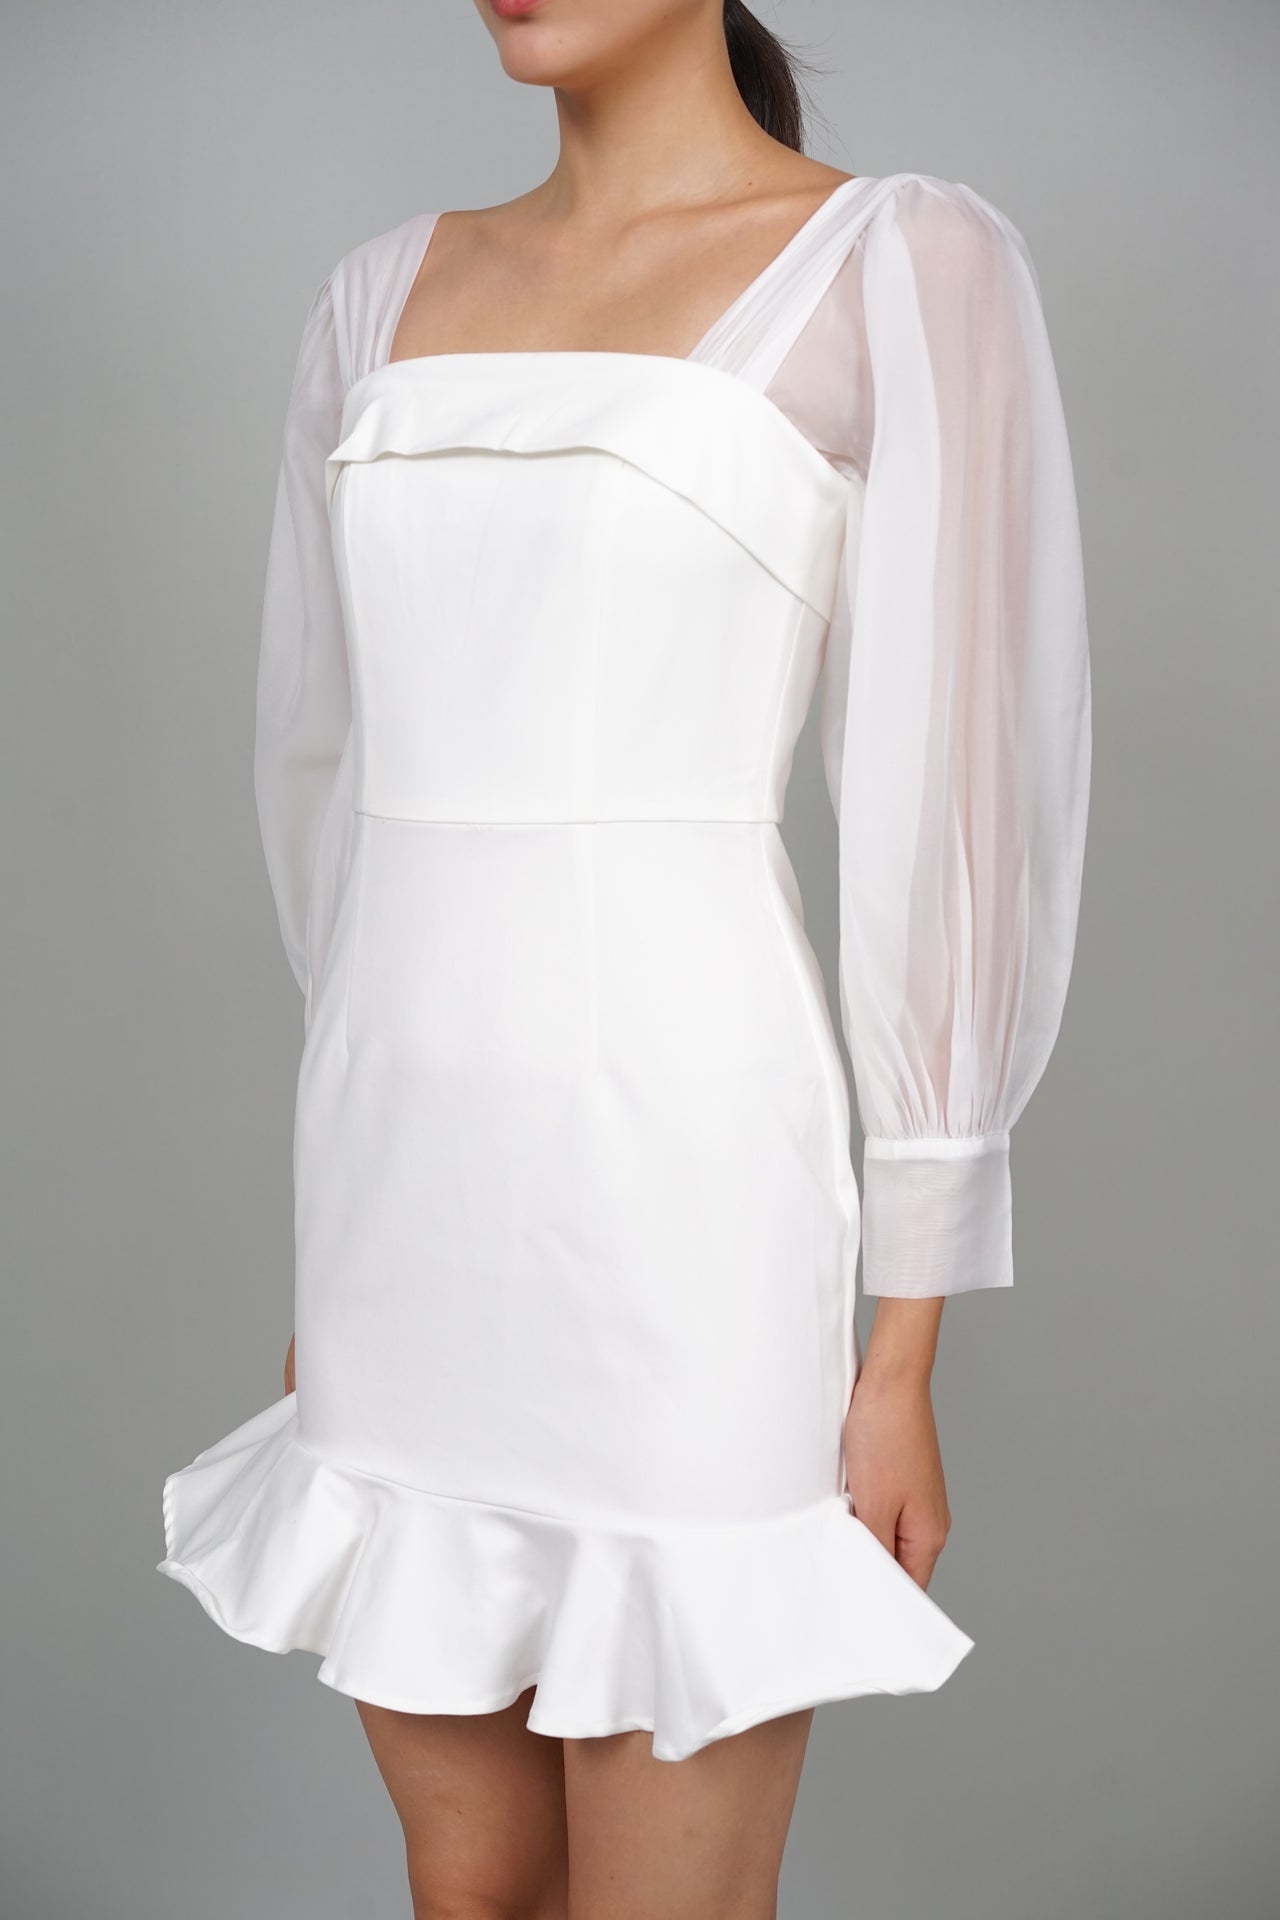 Lainey Ruffled Hem Dress in White